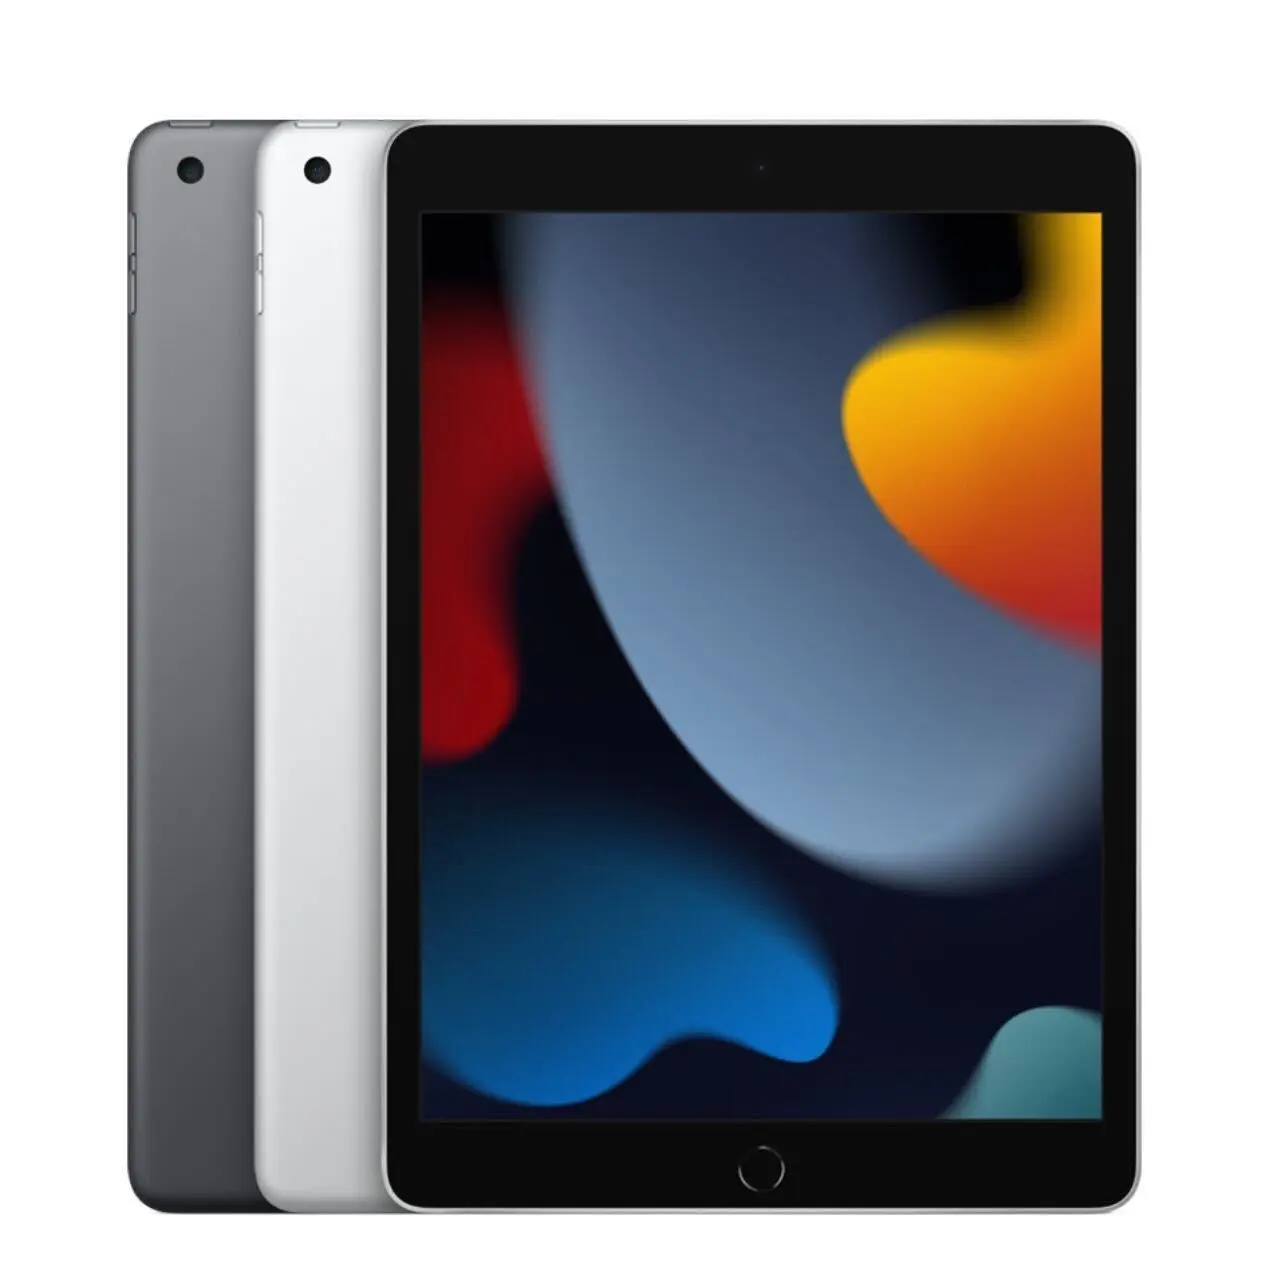 Werkspreis US-Marke Tablet-Computer für persönlichen Gebrauch 99% neu für Ipad 2021 Ios-System 4G WLAN aus zweiter Hand Ipad 9